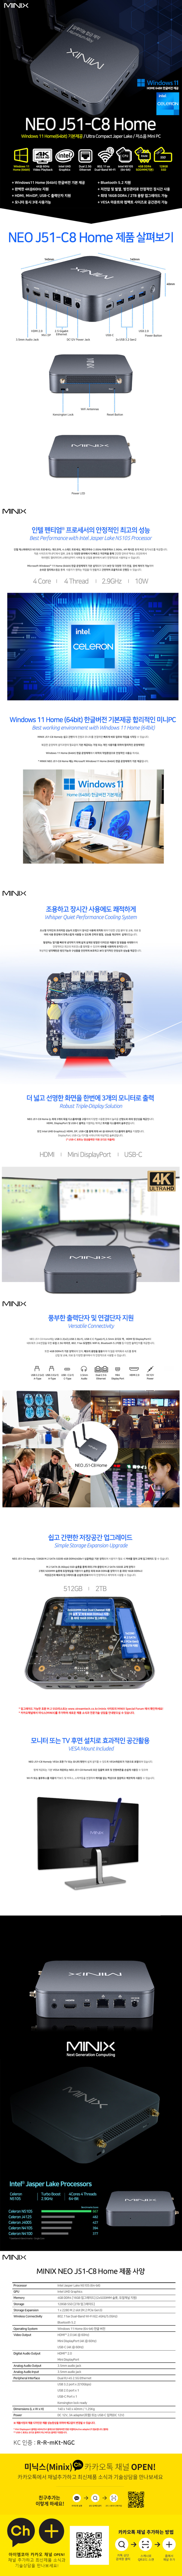 MINIX NEO J51-C8 Home (INTEL N5105, DDR4 4GB, NVMe 128GB, Wi-Fi 6) - 30만원대 초반(가격대비 최고 성능 보장)